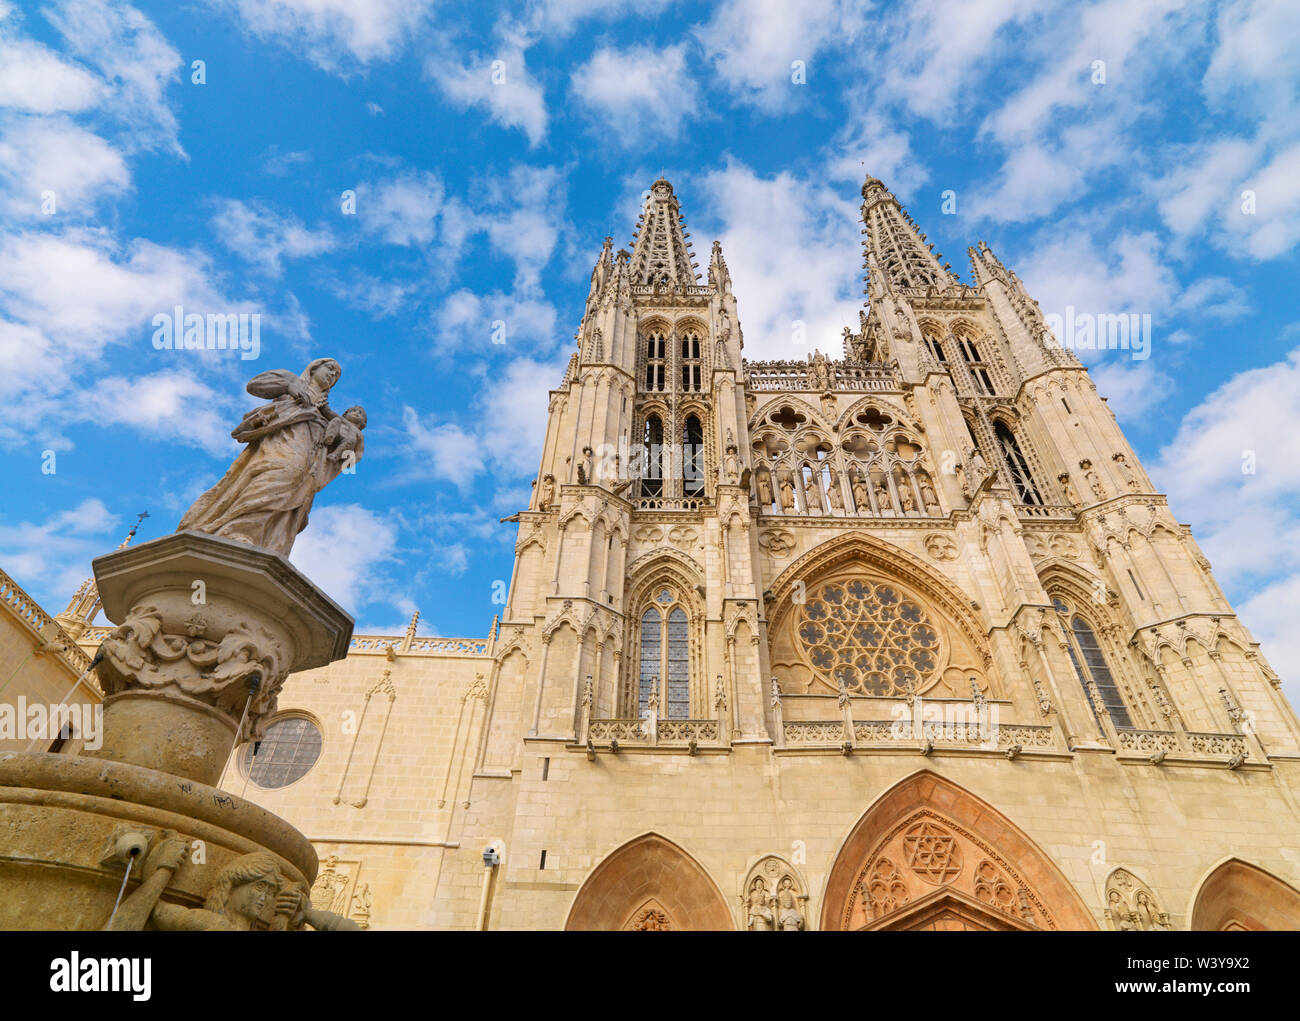 España, Castilla y León, Burgos, Plaza de Santa María y Santa María de la catedral de Burgos; Sitio de Patrimonio Mundial de la UNESCO Foto de stock